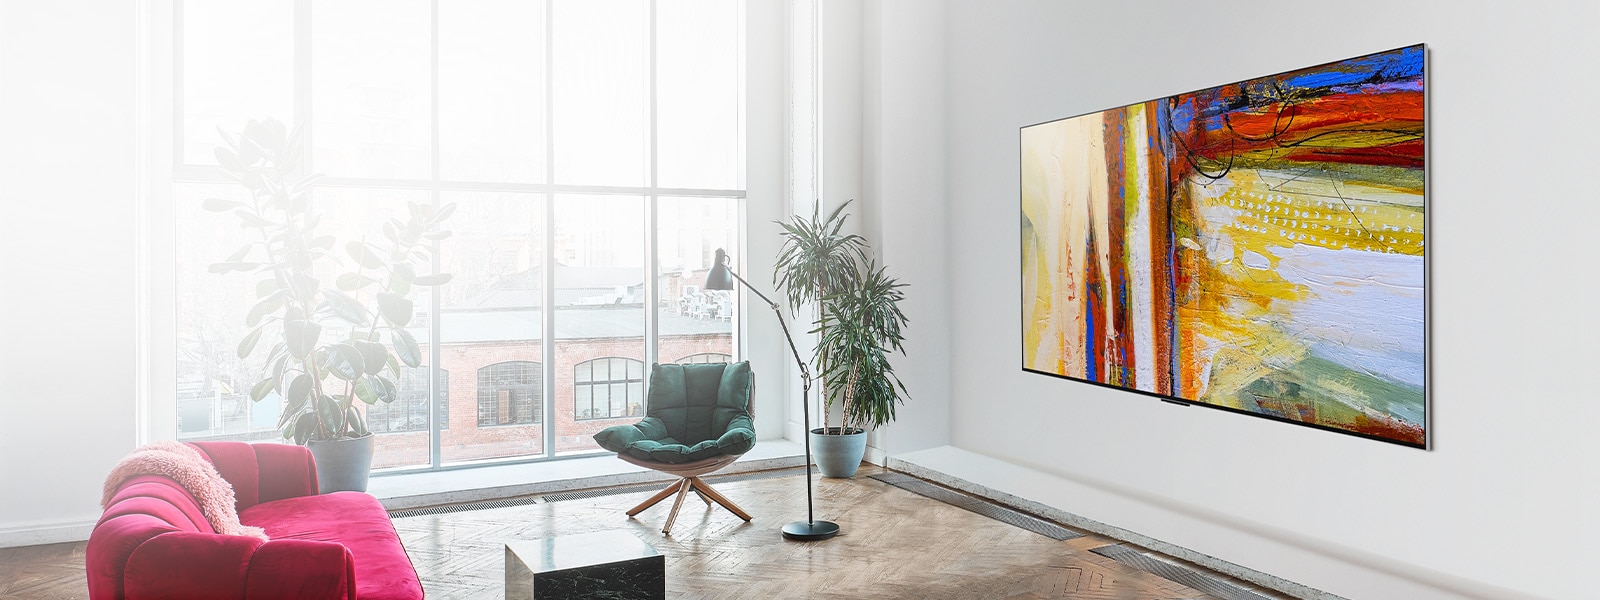 Az LG OLED G3 képe egy színes, absztrakt műalkotást mutat egy élénk színű és napfényes szobában. 